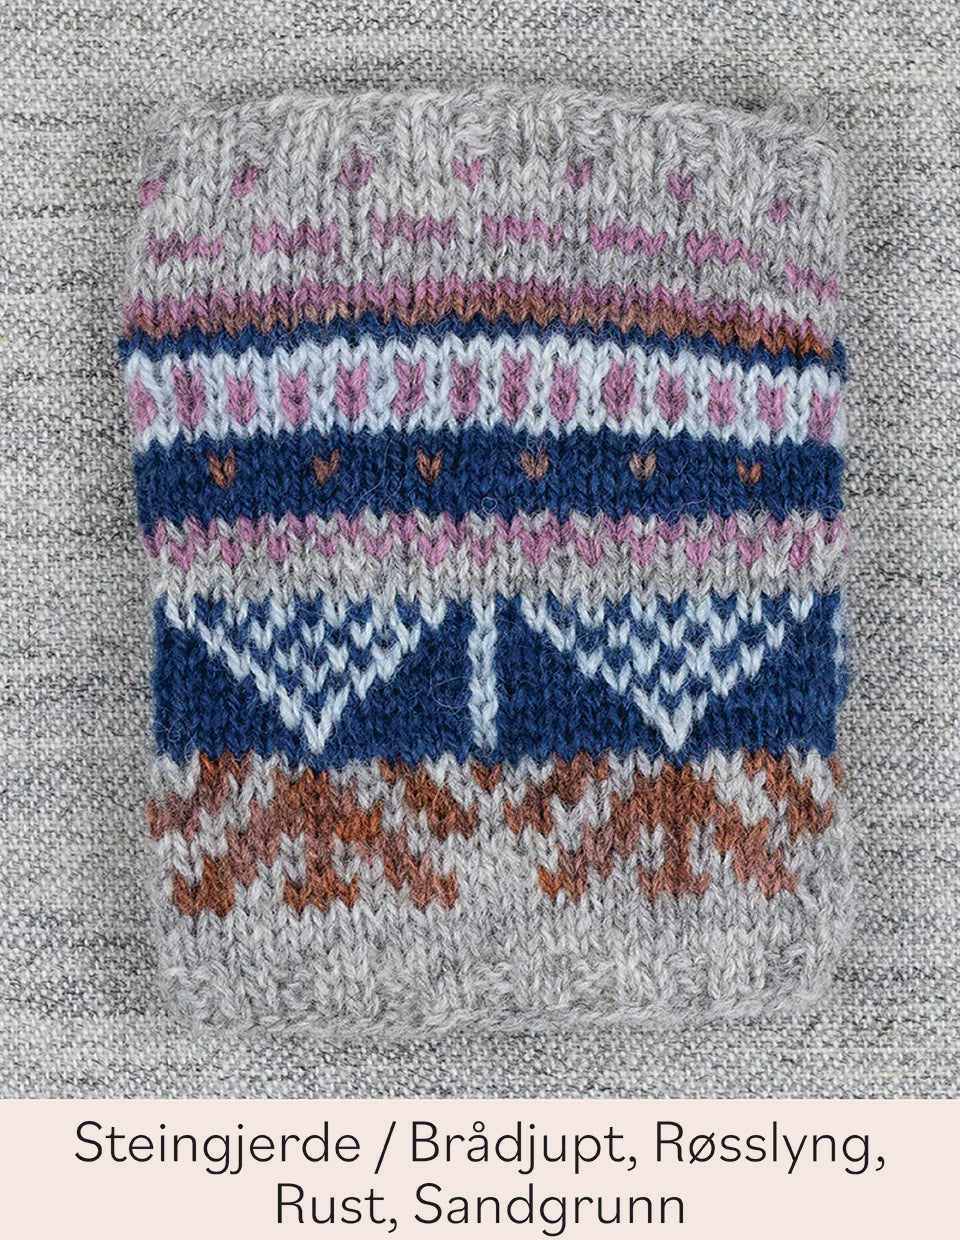 Sissel cardigan, 2-ply, knitting kit